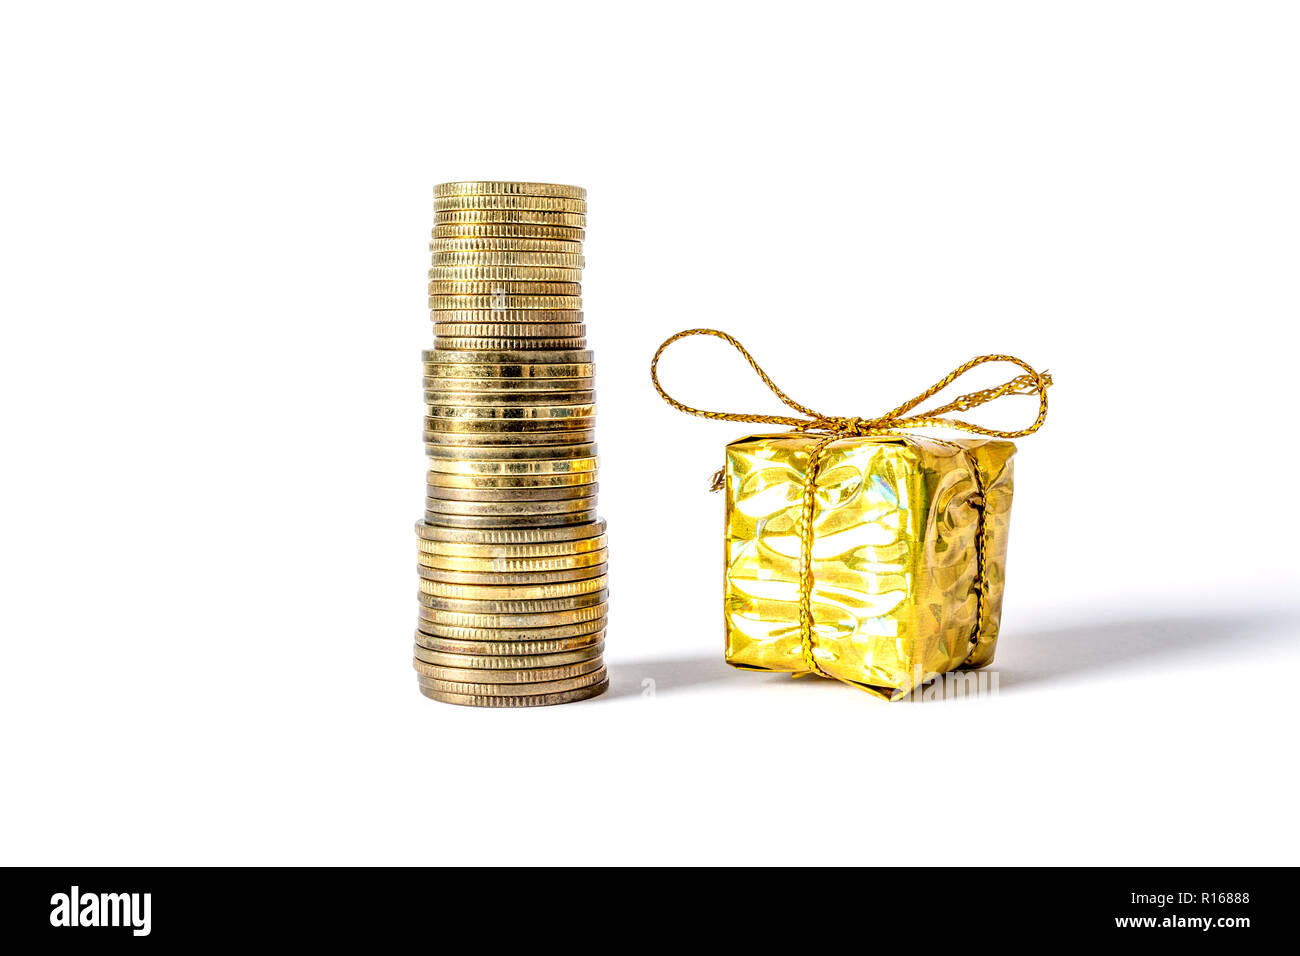 Geschenkbox in Gold Verpackung verband mit einem Bogen neben Münzen Spalte  close-up auf weißem Hintergrund Stockfotografie - Alamy